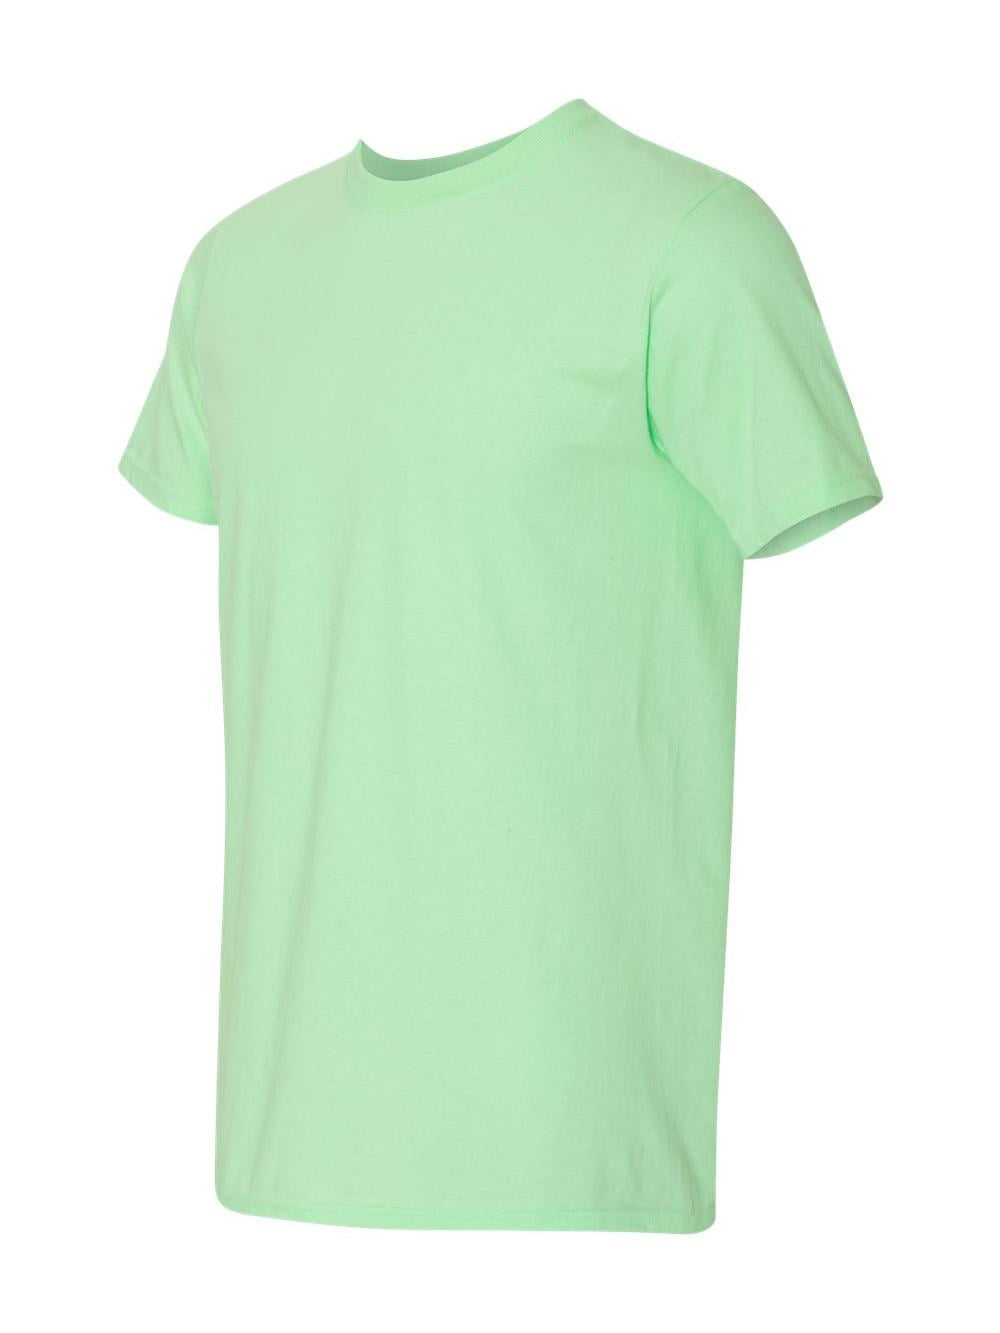 Gildan - Softstyle T-Shirt - 64000 - Mint Green - Size: XL - Walmart.com